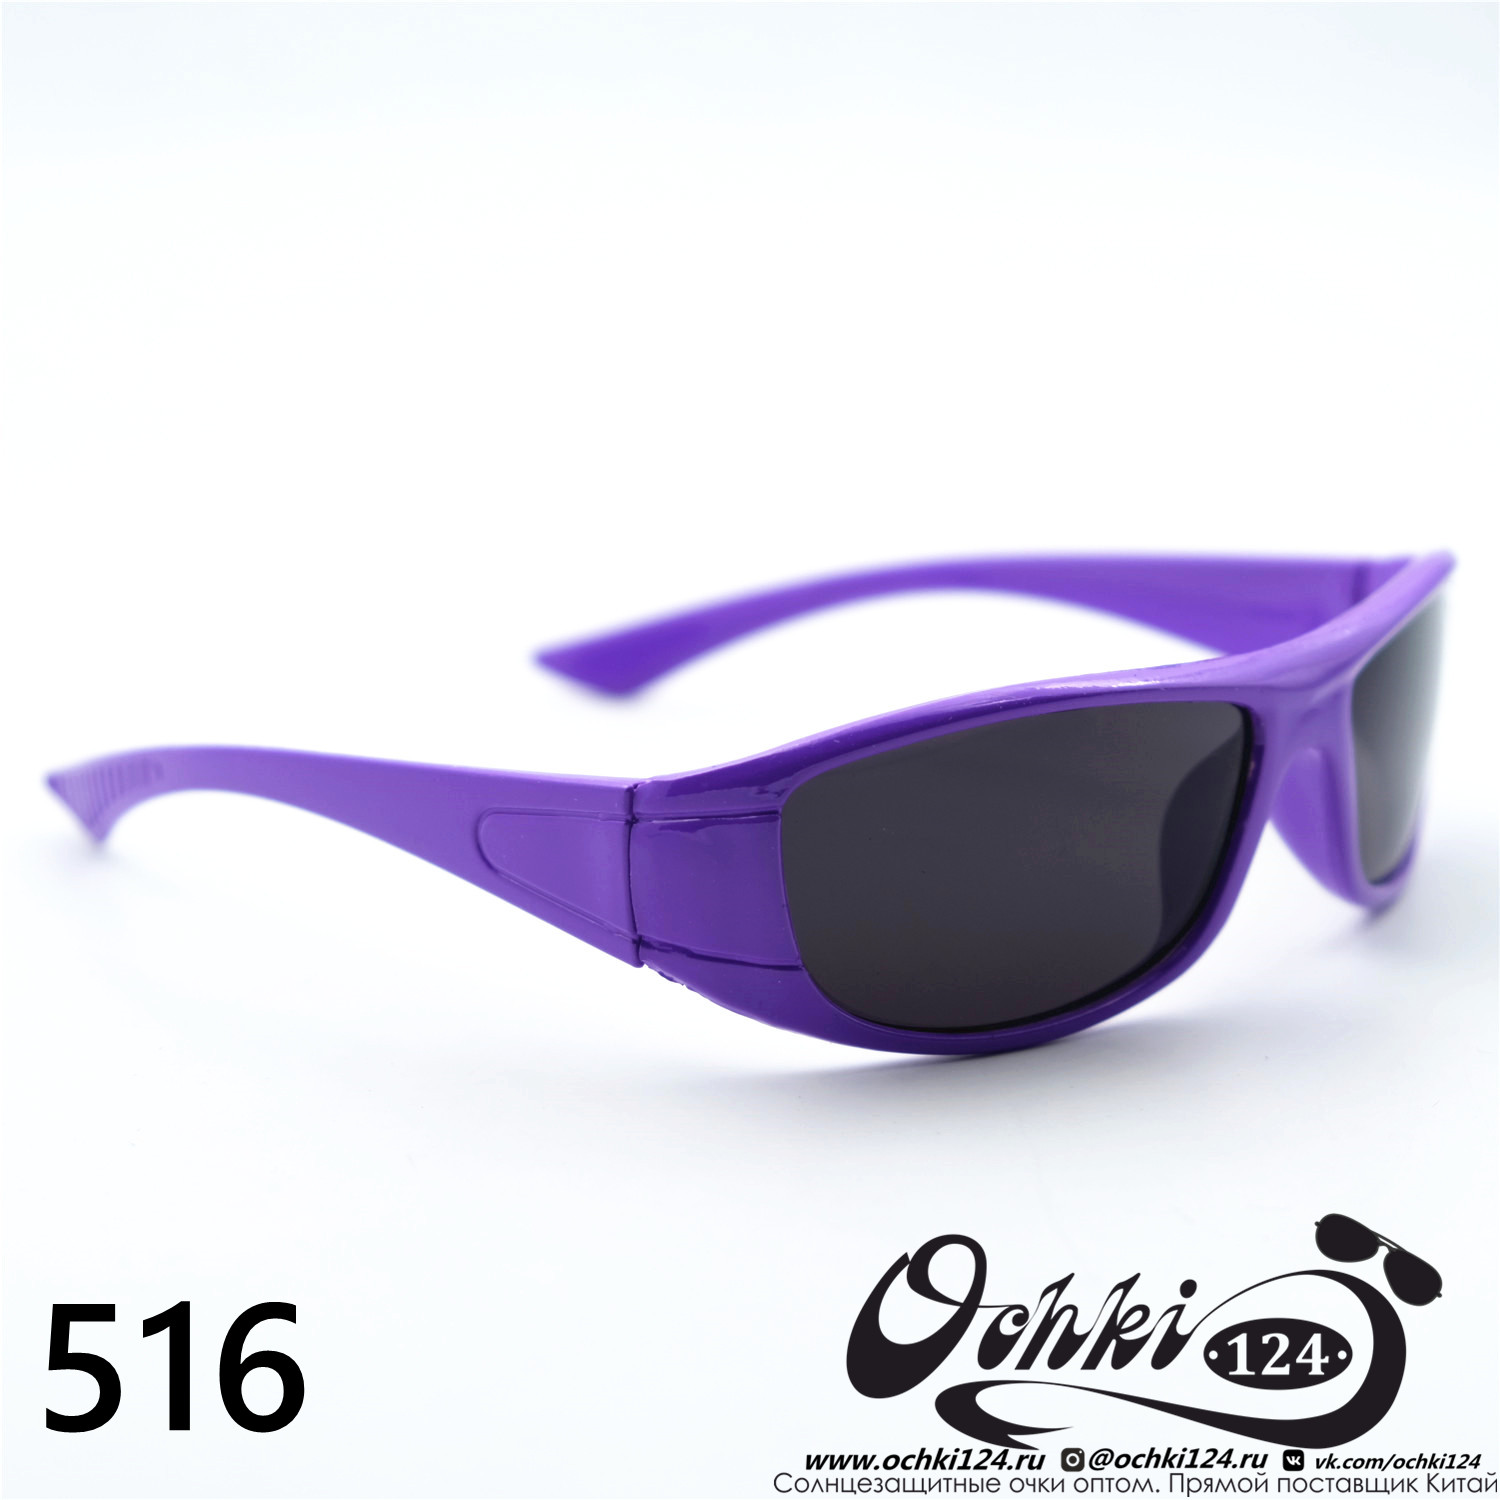  Солнцезащитные очки картинка 2023 Детские Узкие и длинные  516-C6 